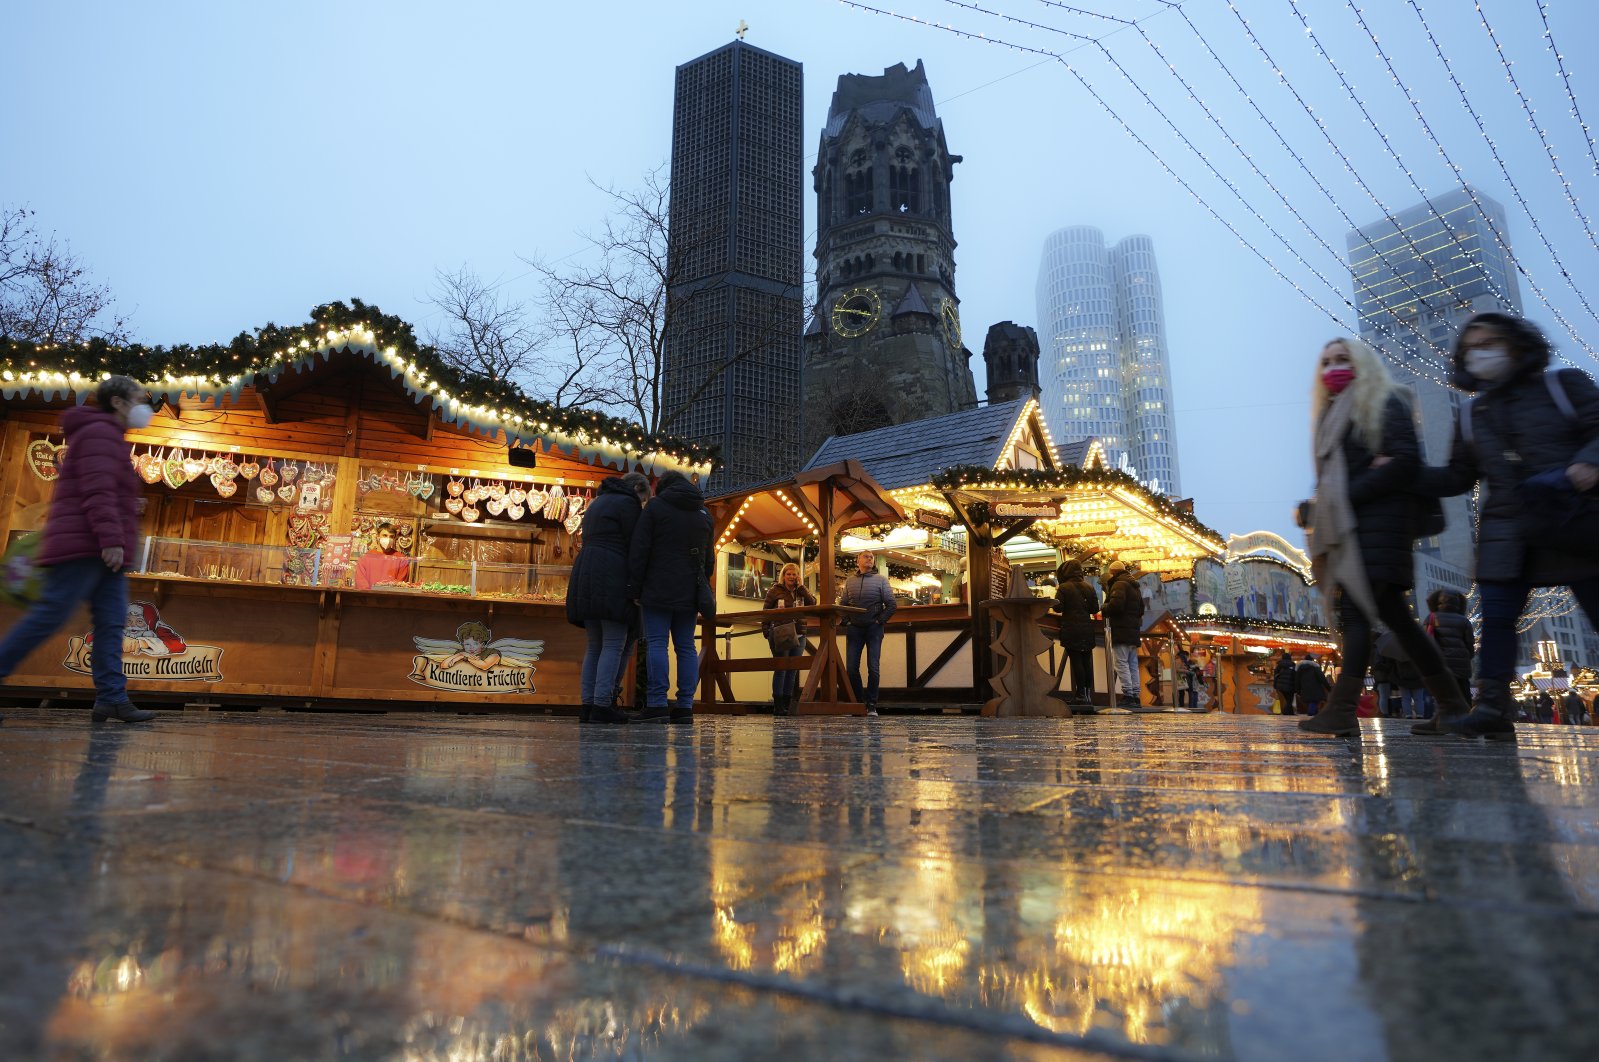 People visit the Christmas market at the Breitscheidplatz (Breitscheid Square) in Berlin, Germany, Dec. 13, 2021. (AP Photo)